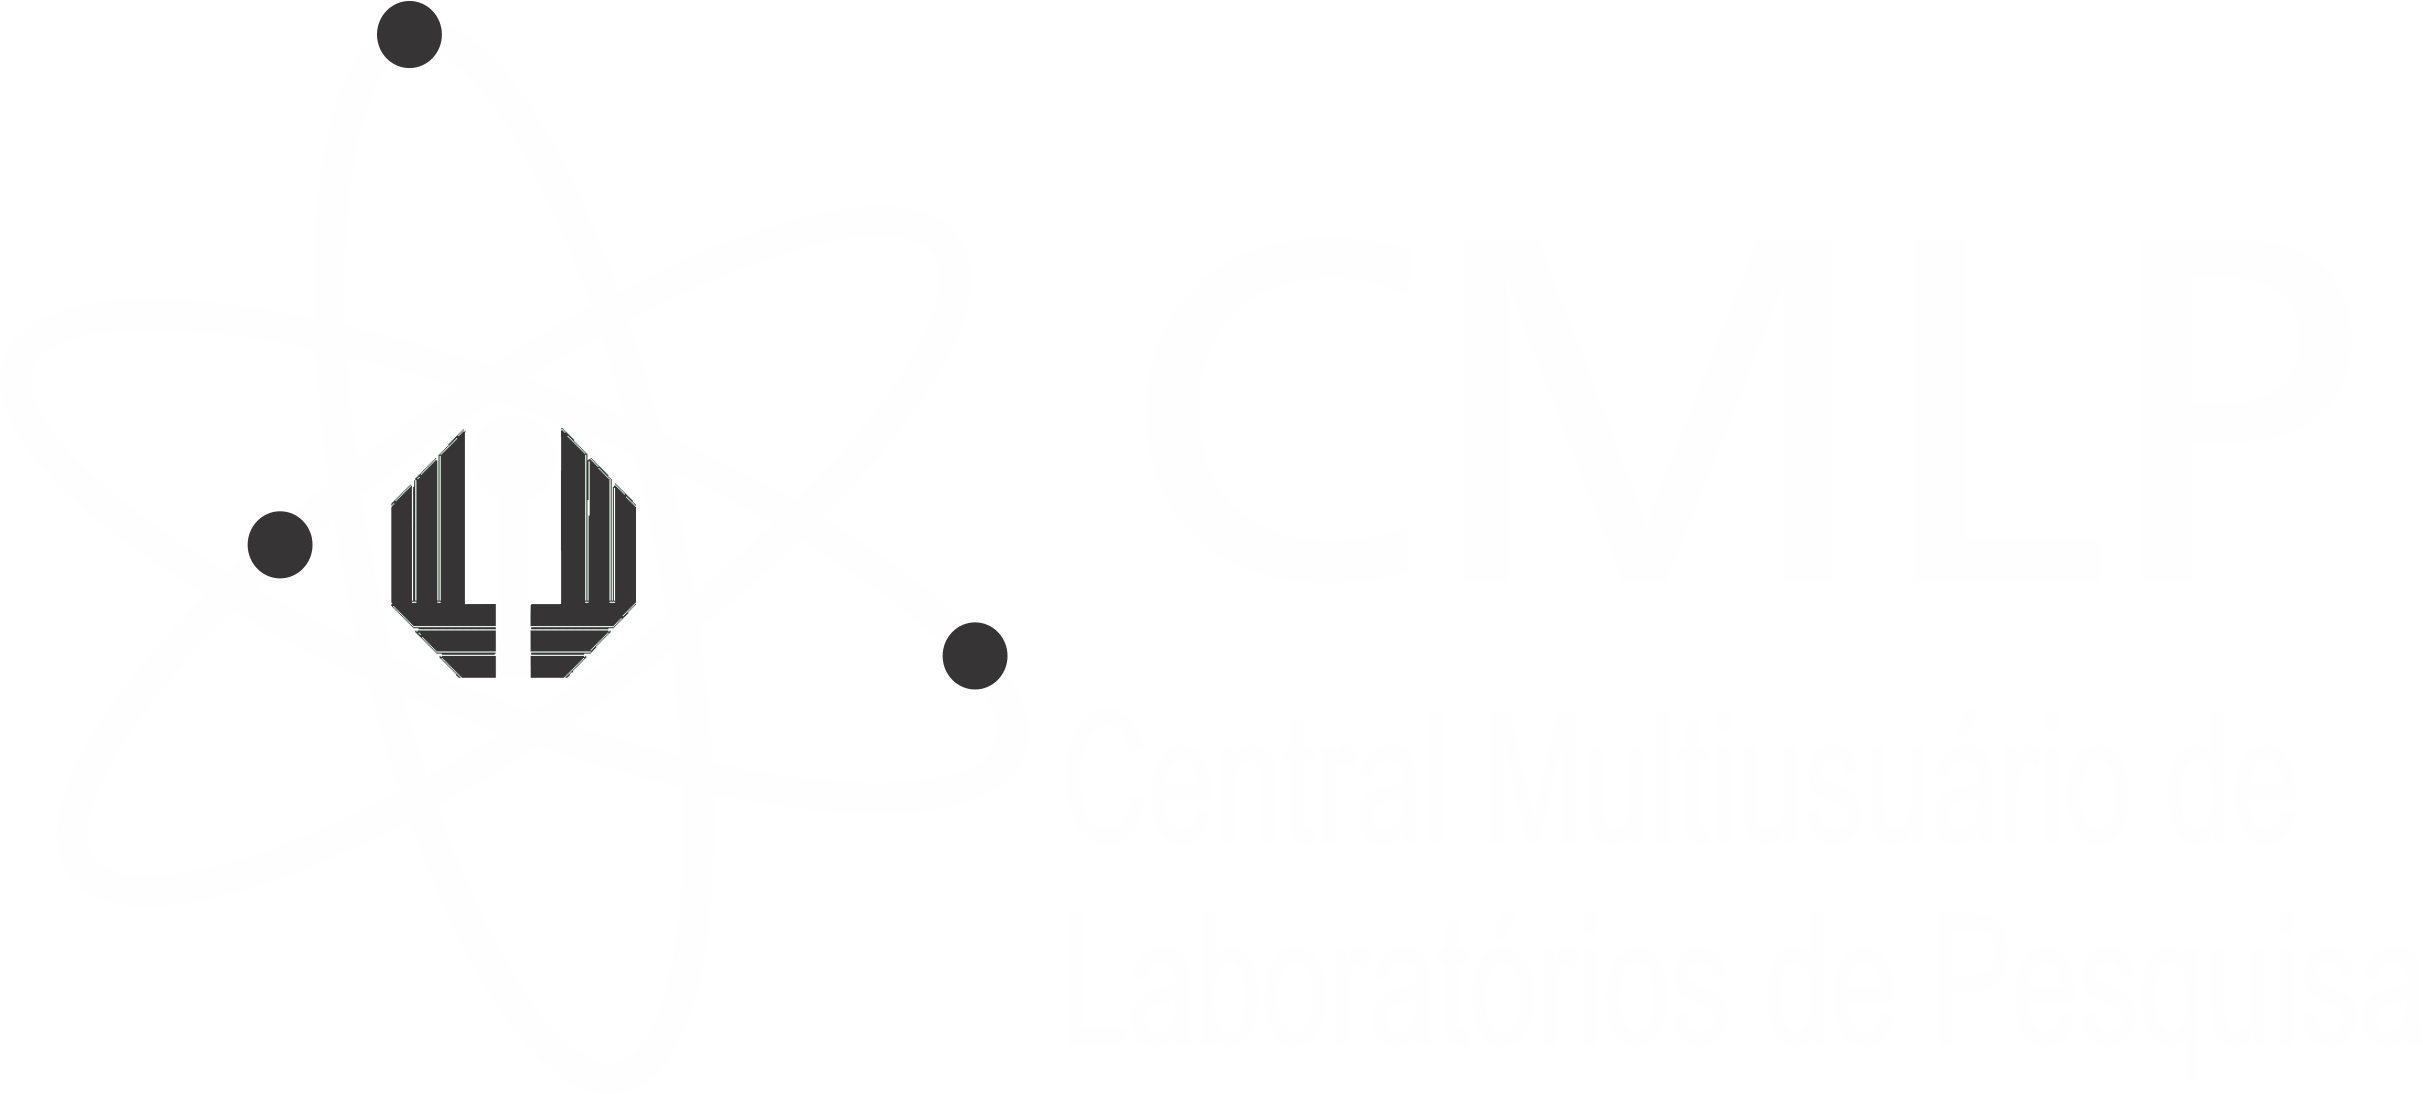 Central Multiusuário de Laboratórios de Pesquisa